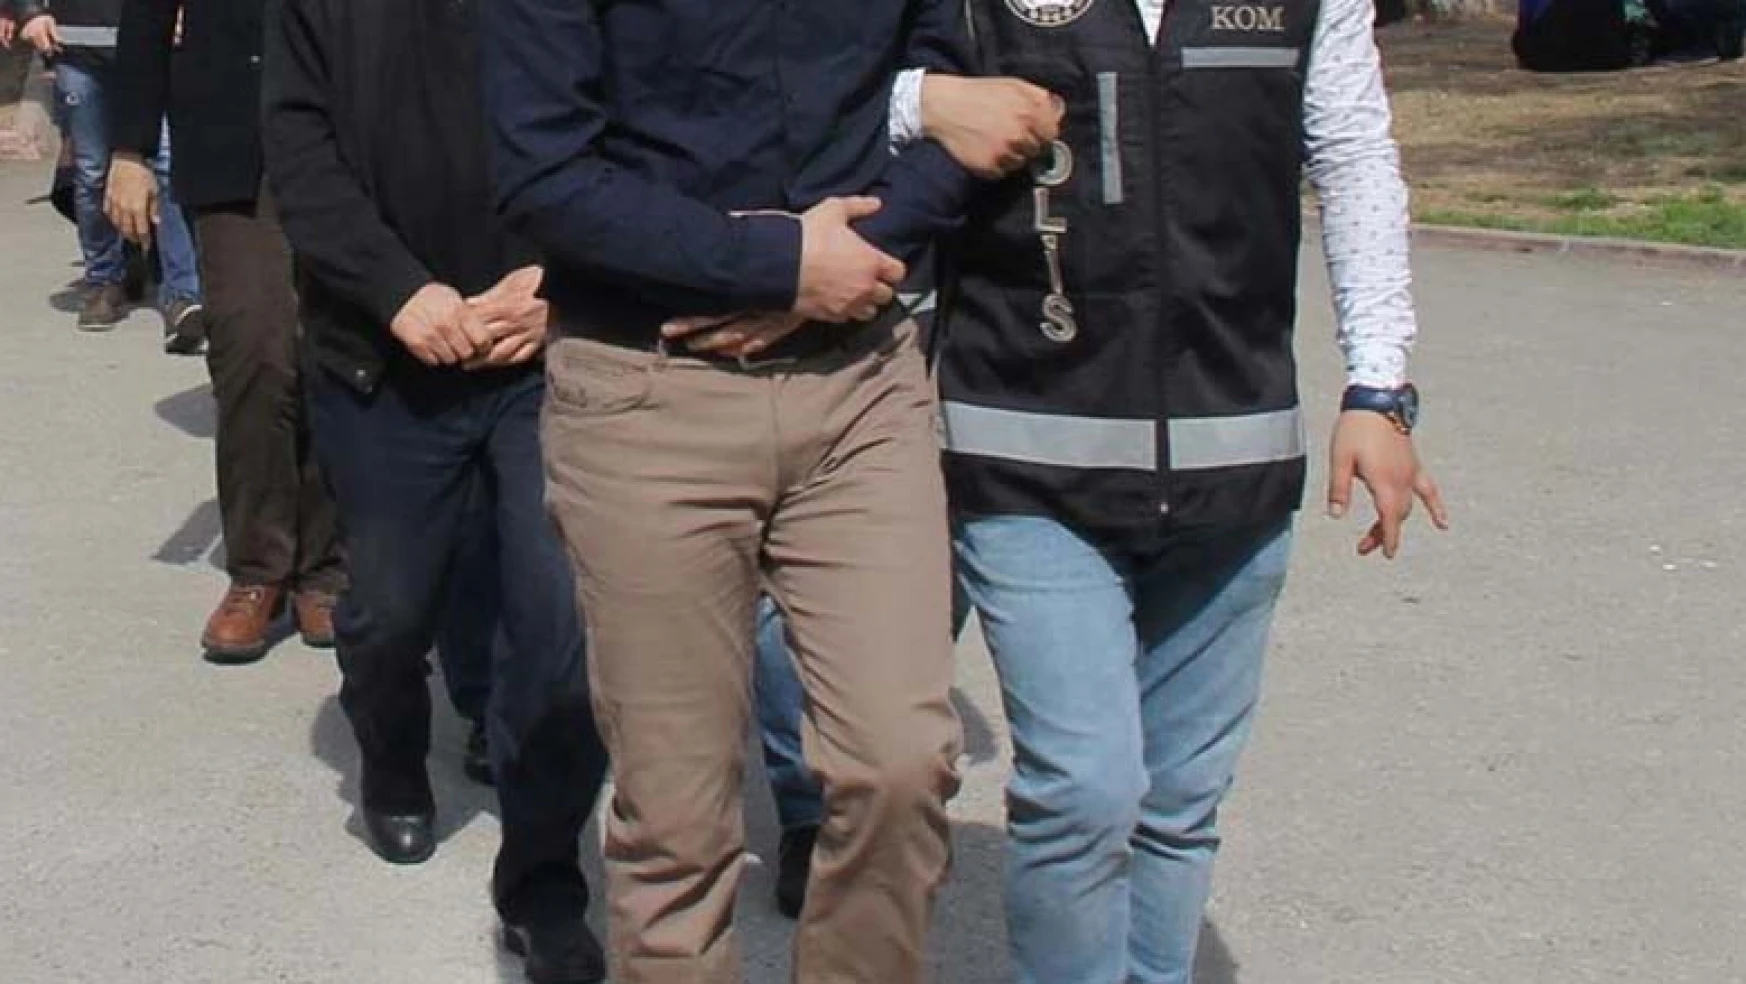 Konya'nın da aralarında bulunduğu 'usulsüz sağlık raporu' düzenleyen suç örgütüne operasyon